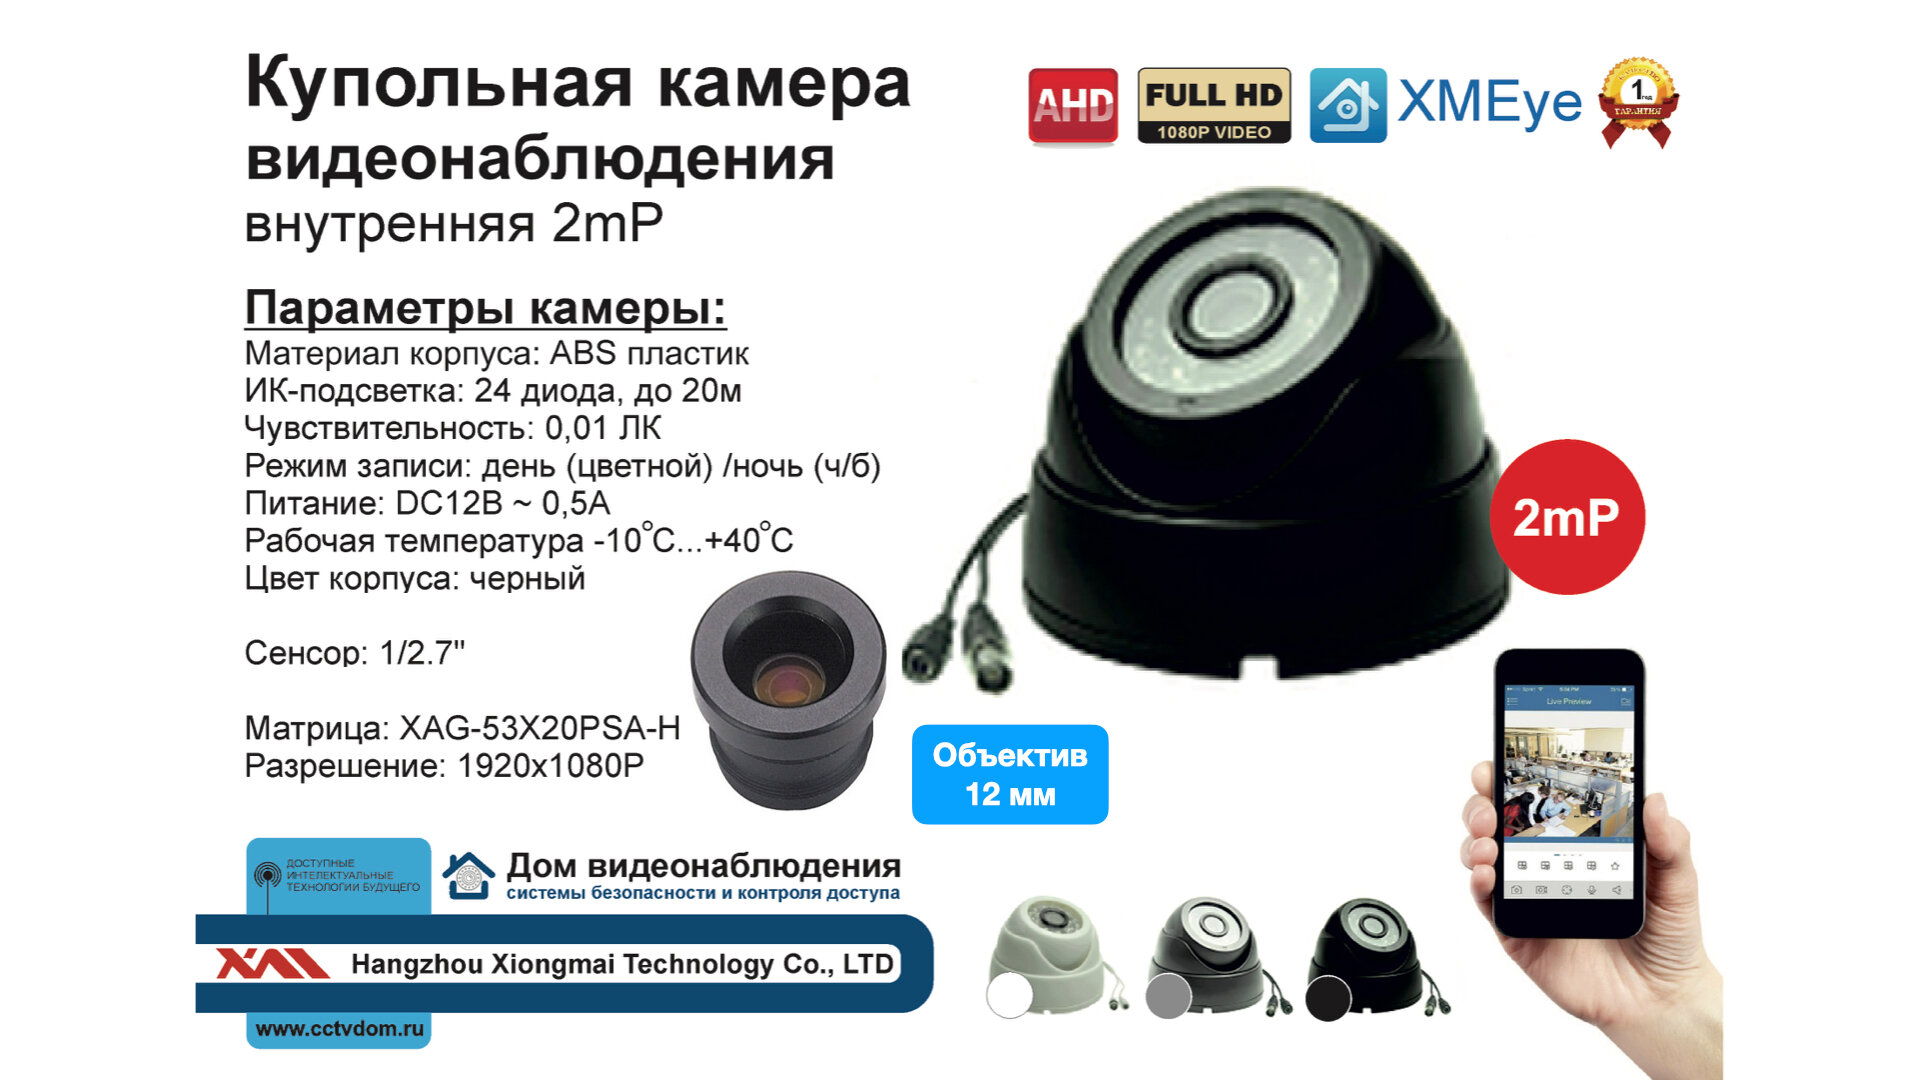 Внутренняя купольная AHD камера 2мП Full HD 1080P